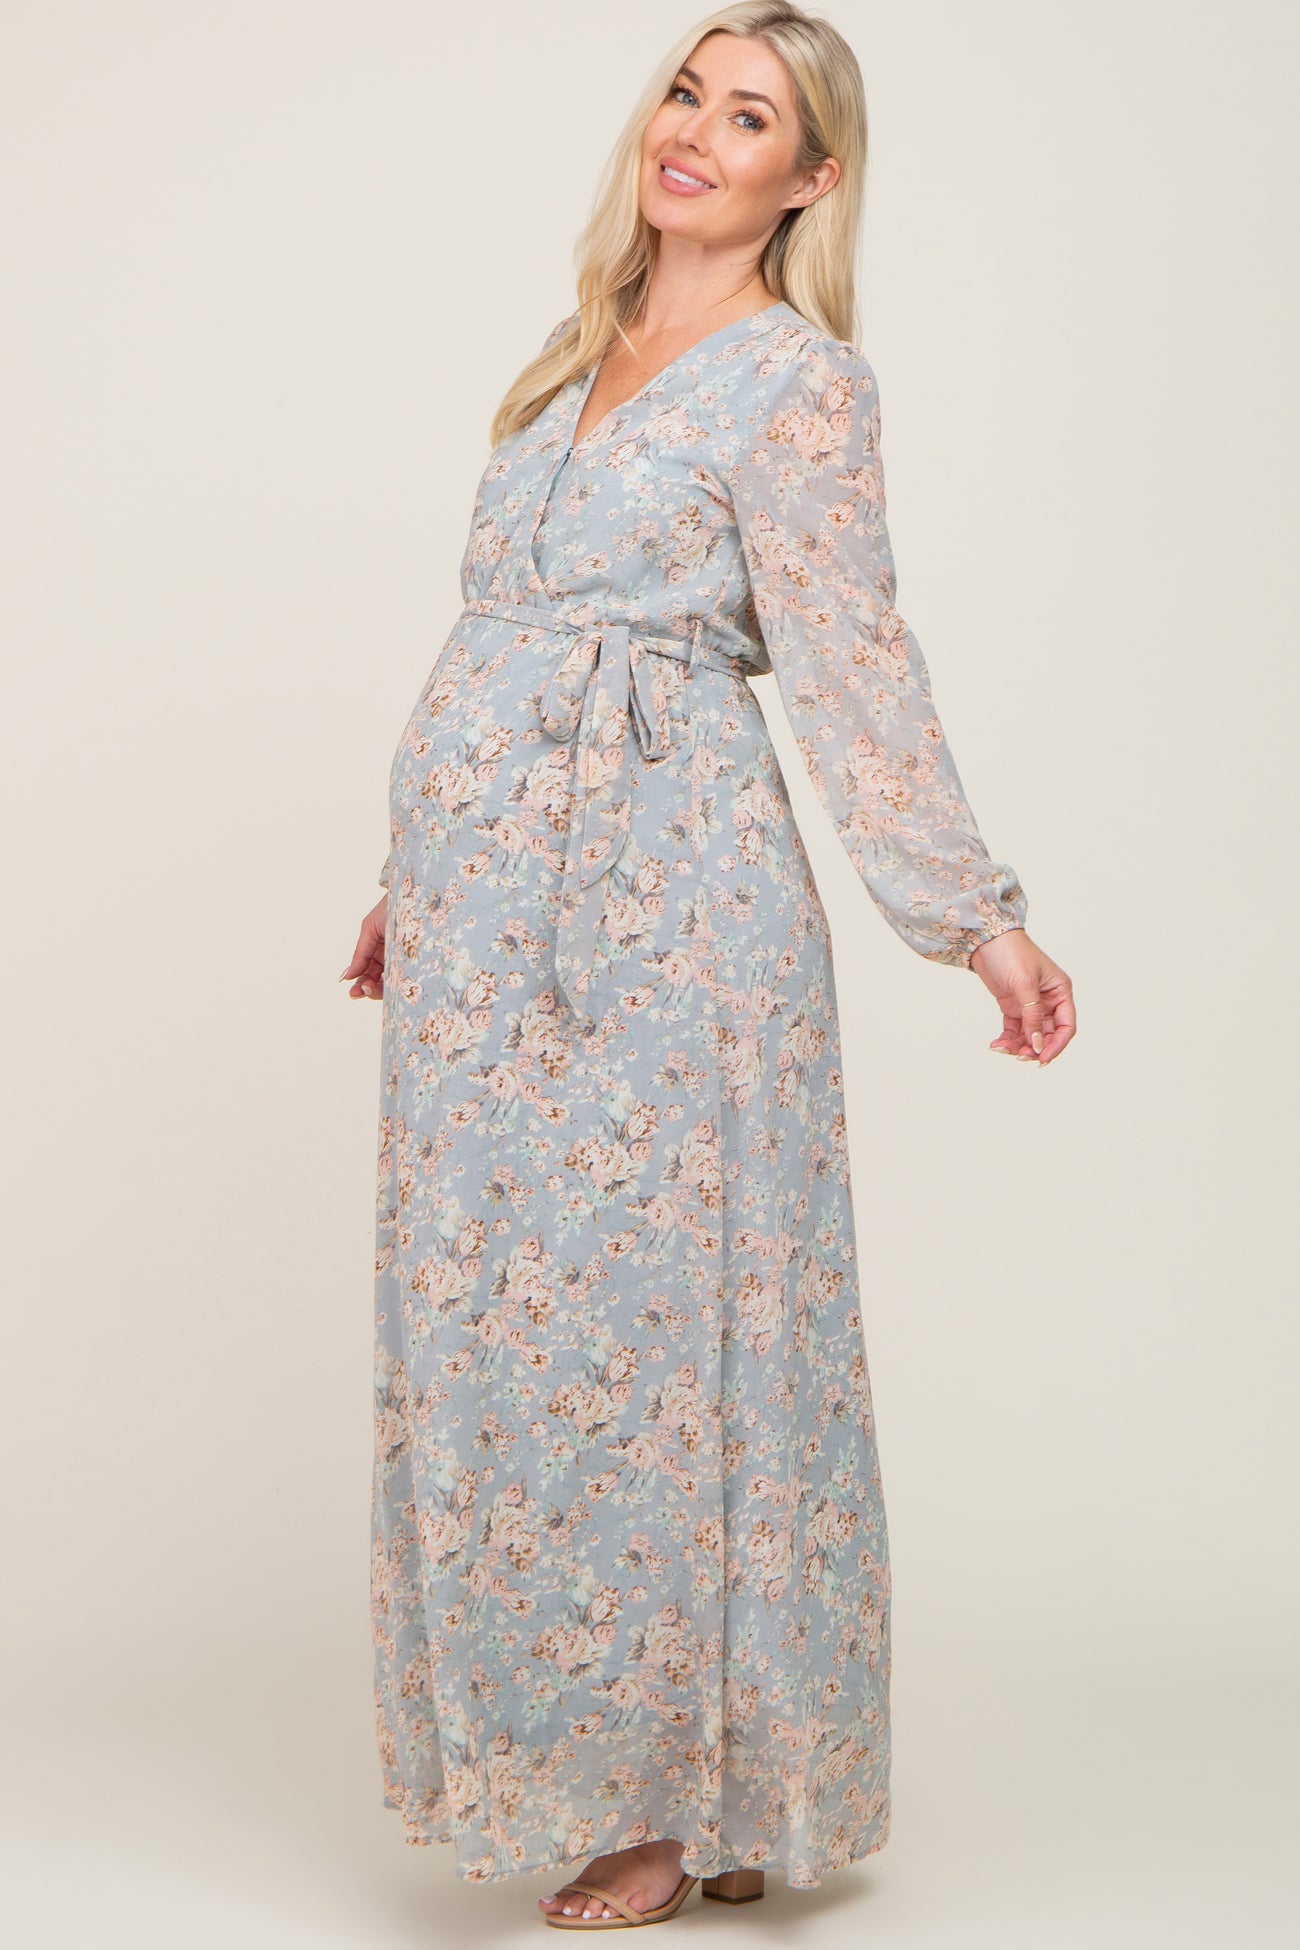 Light Grey Floral Chiffon Maternity Maxi Dress– PinkBlush